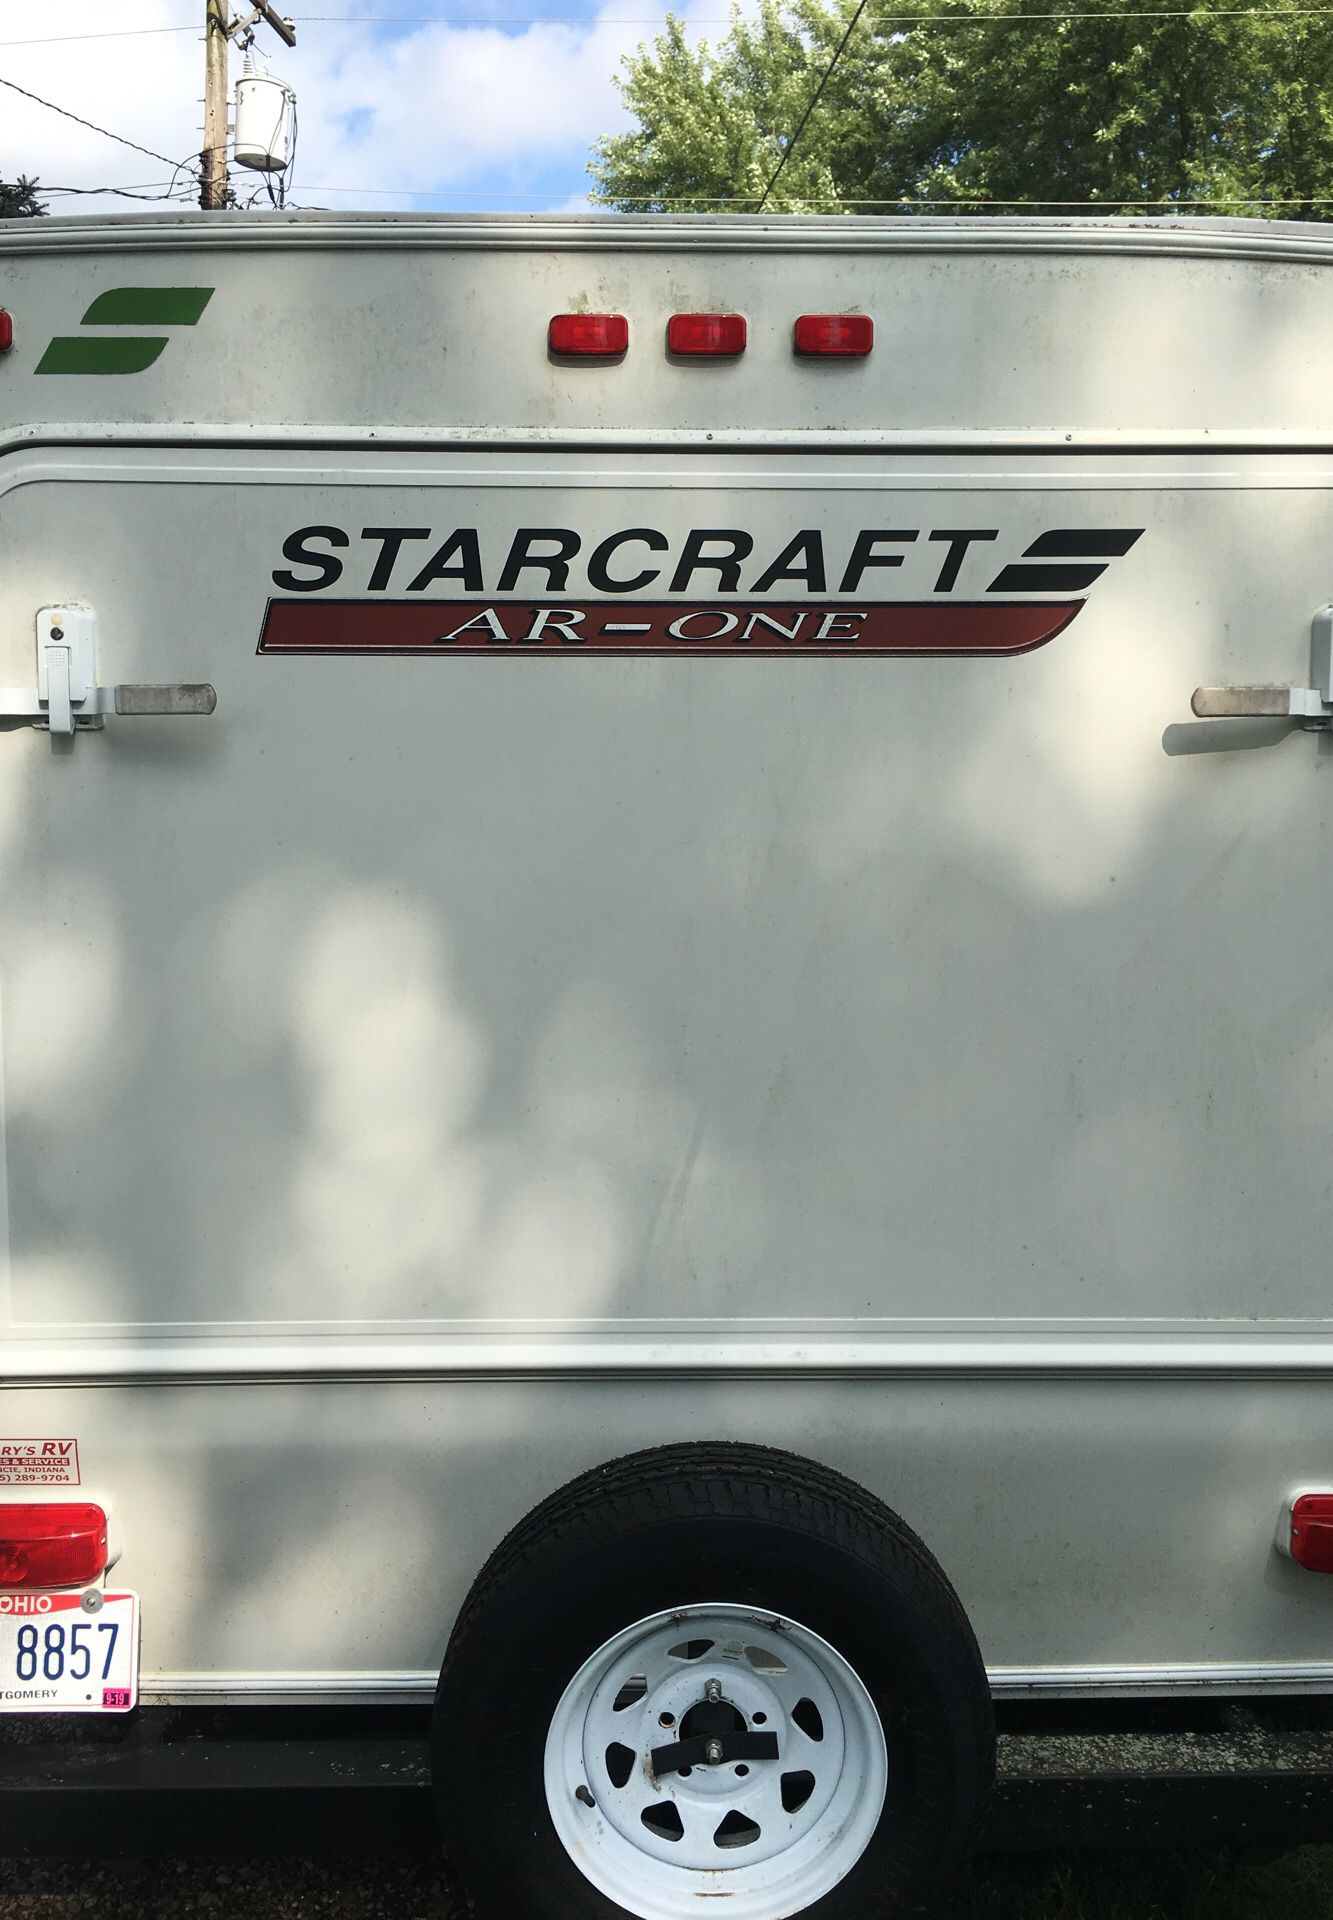 2013 Starcraft camper